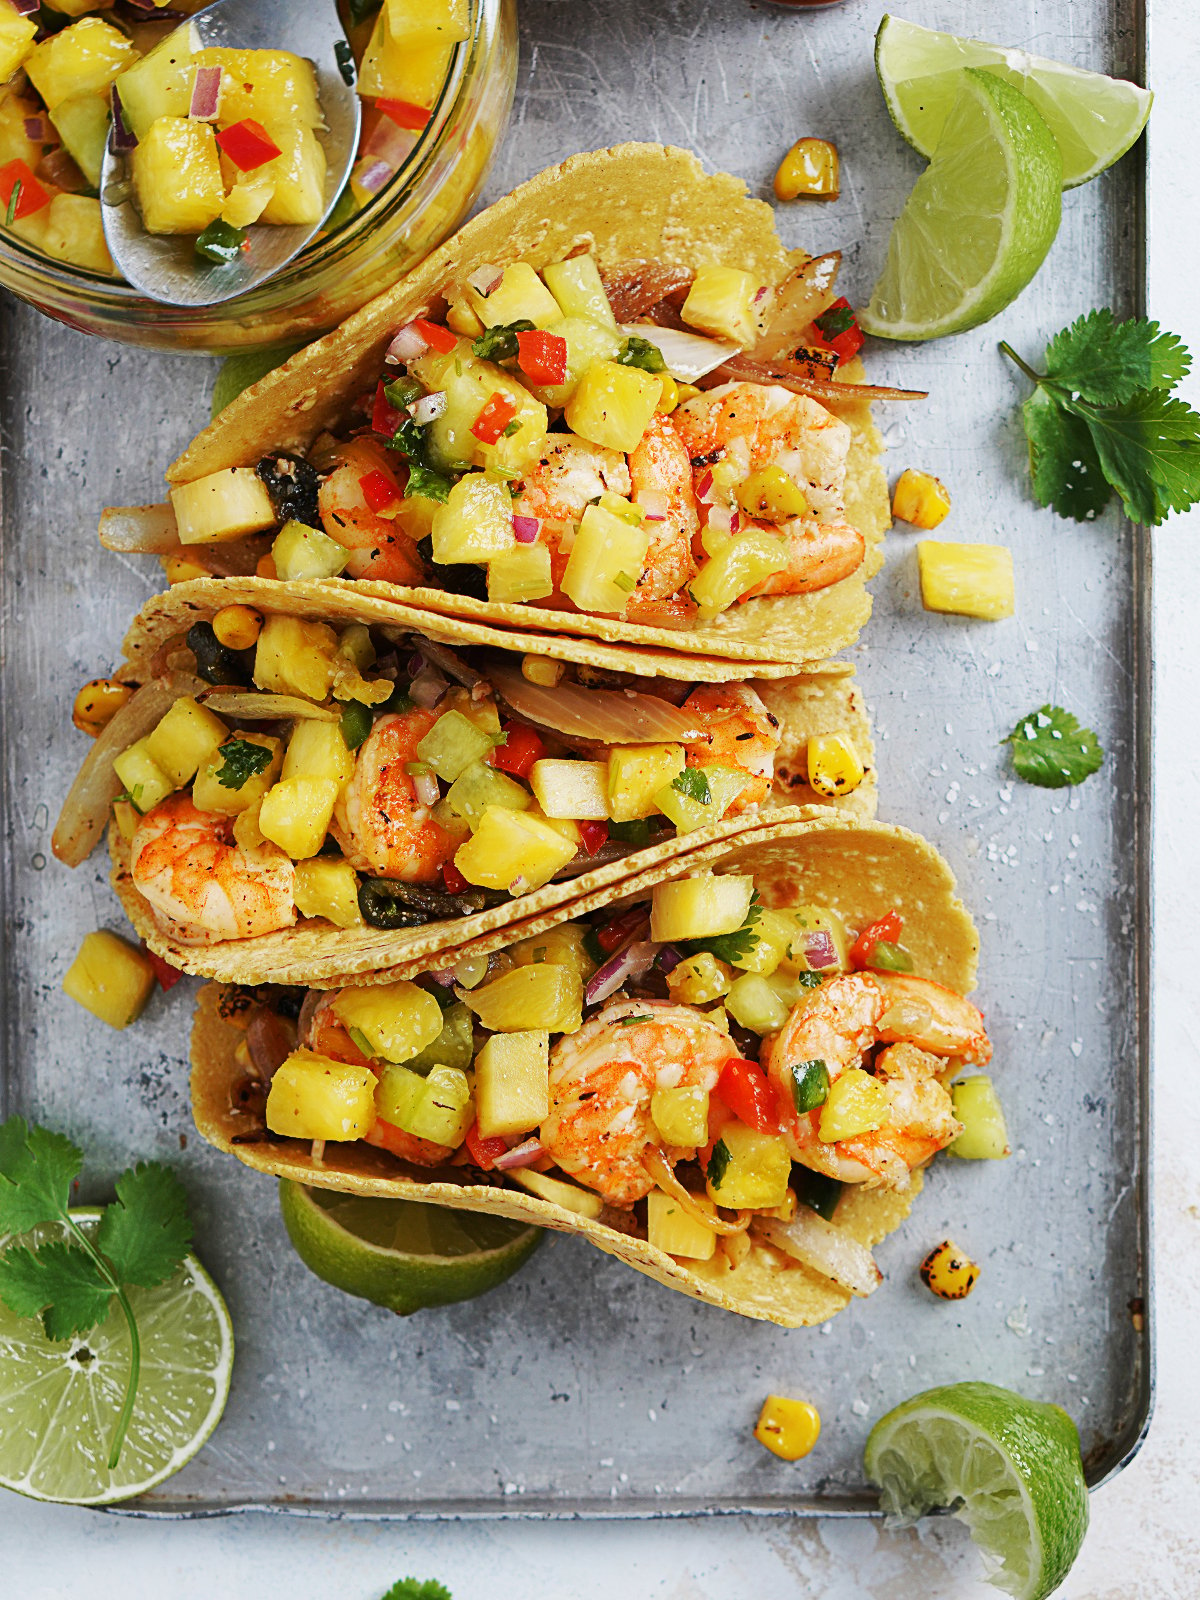 Tacos De Camaron (Shrimp Tacos) | Mexican Recipes by Muy Delish